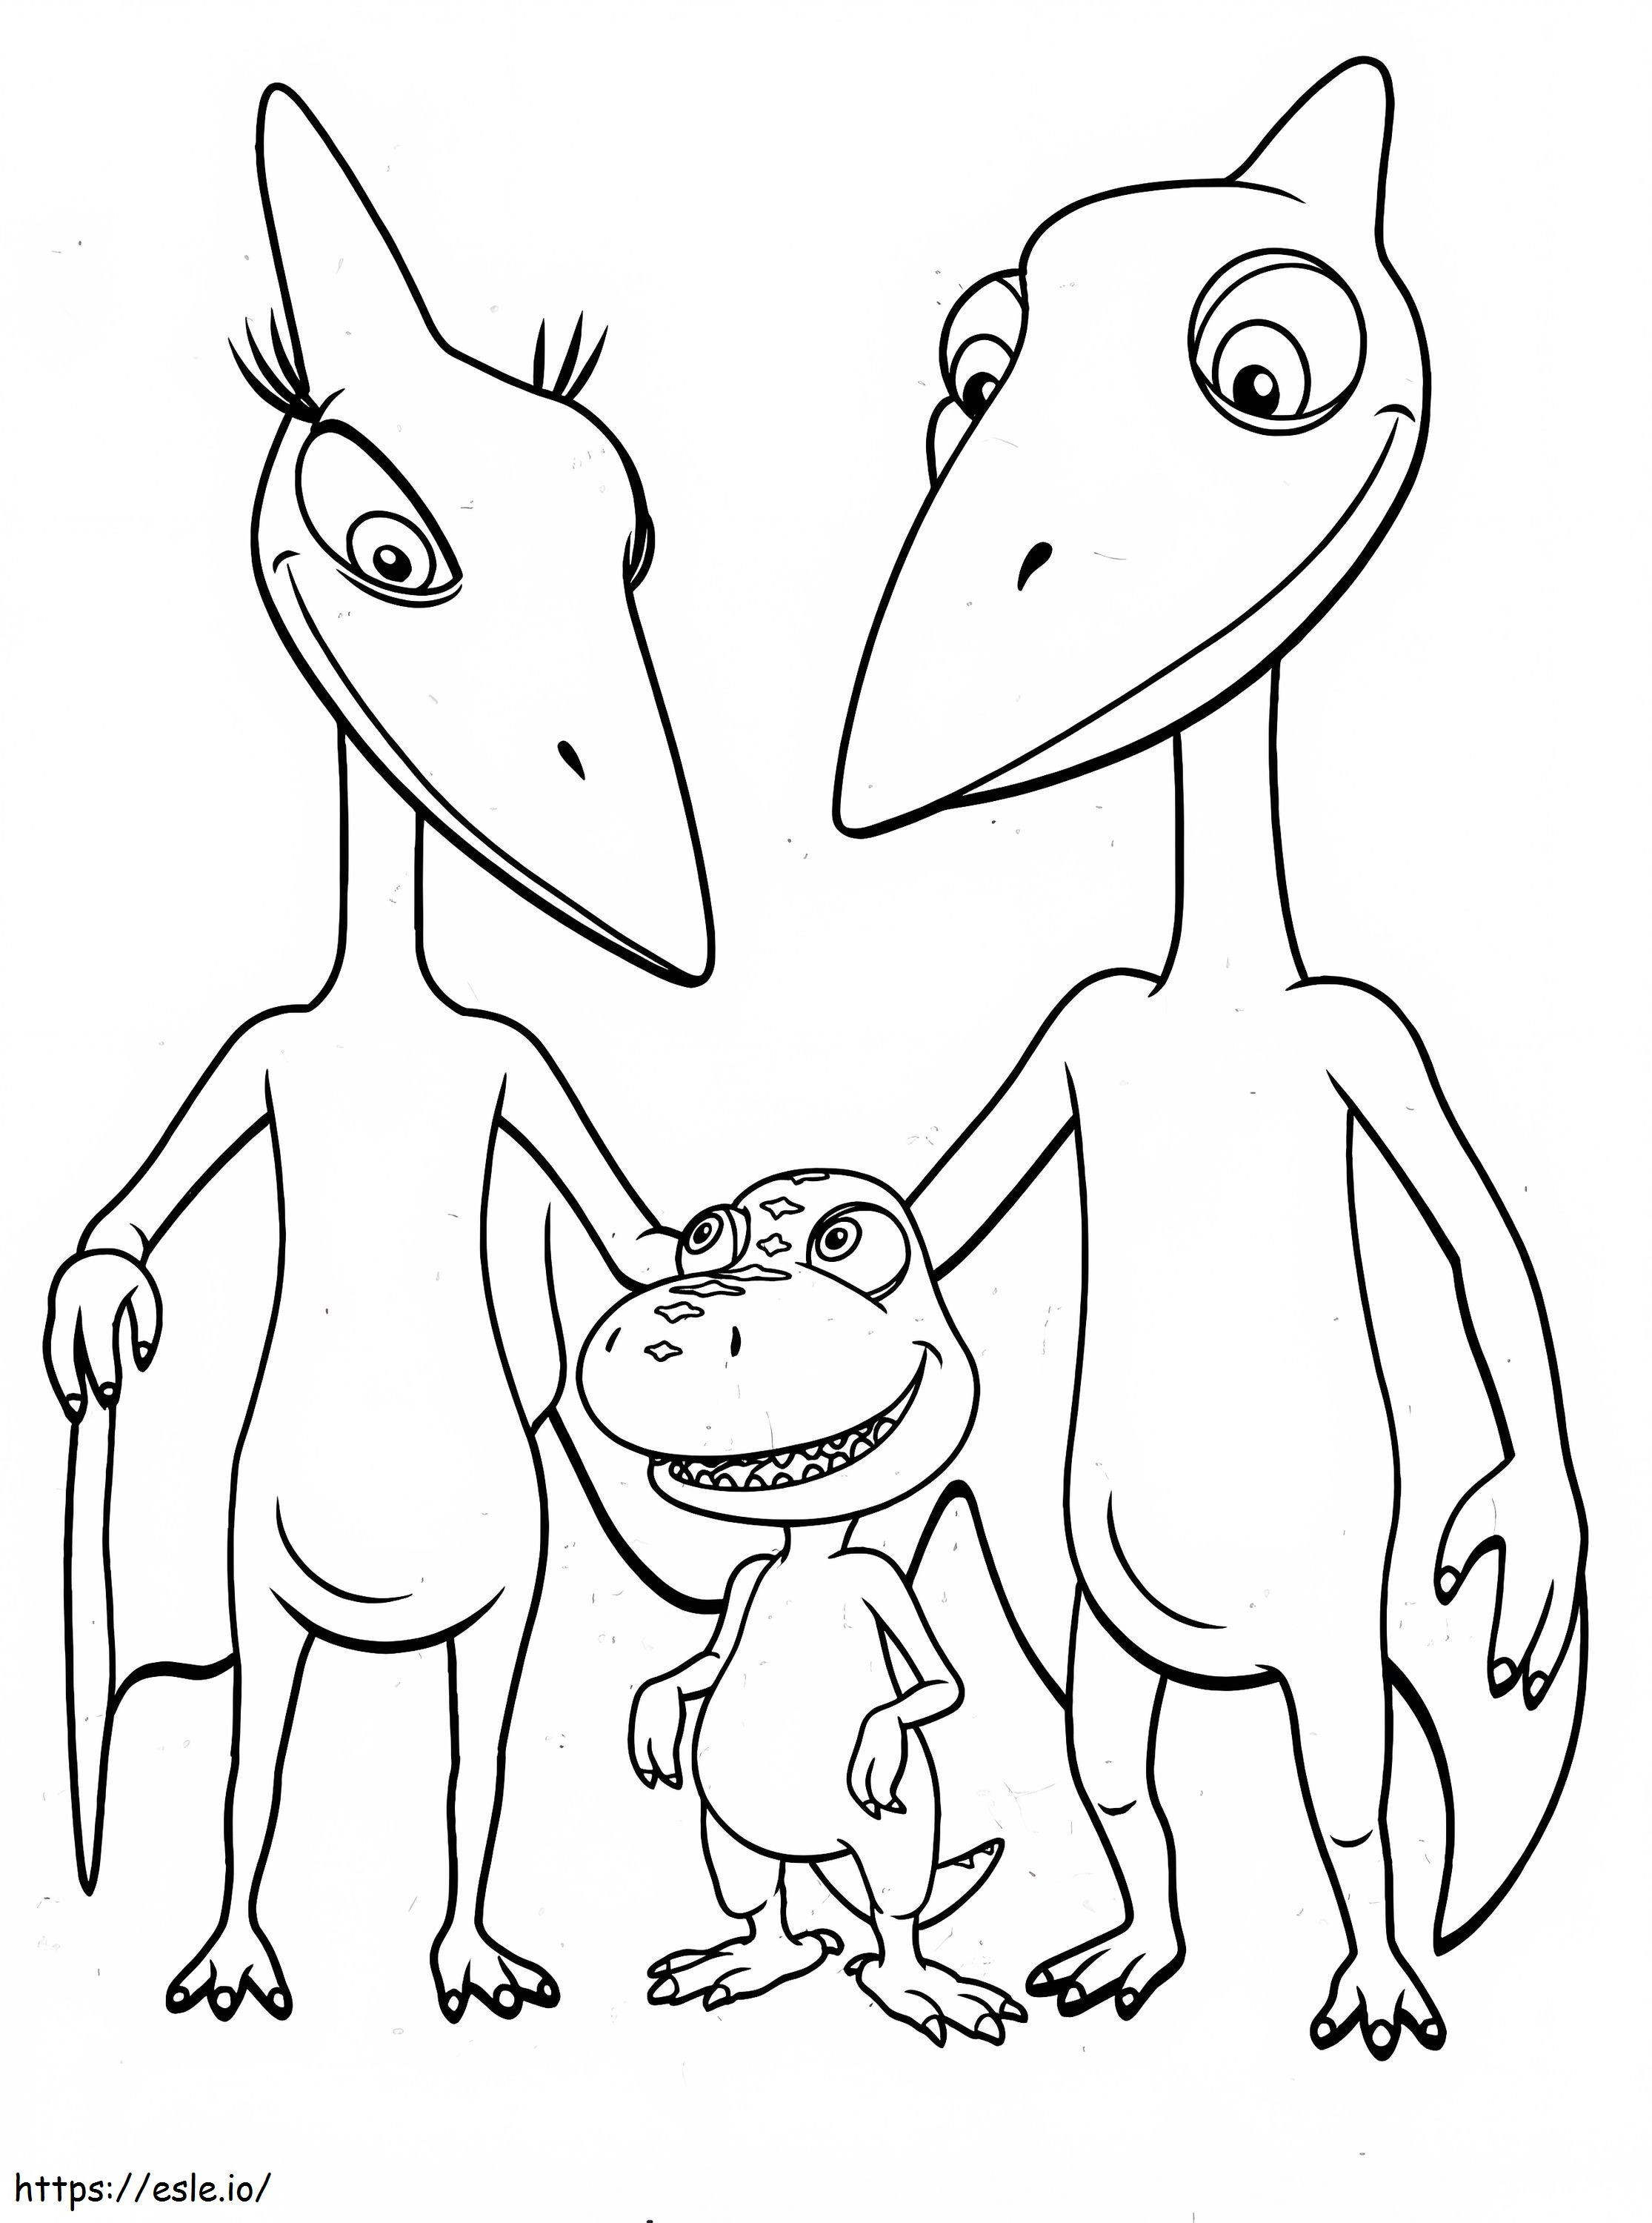 Niedliche Dinosaurierfamilie ausmalbilder